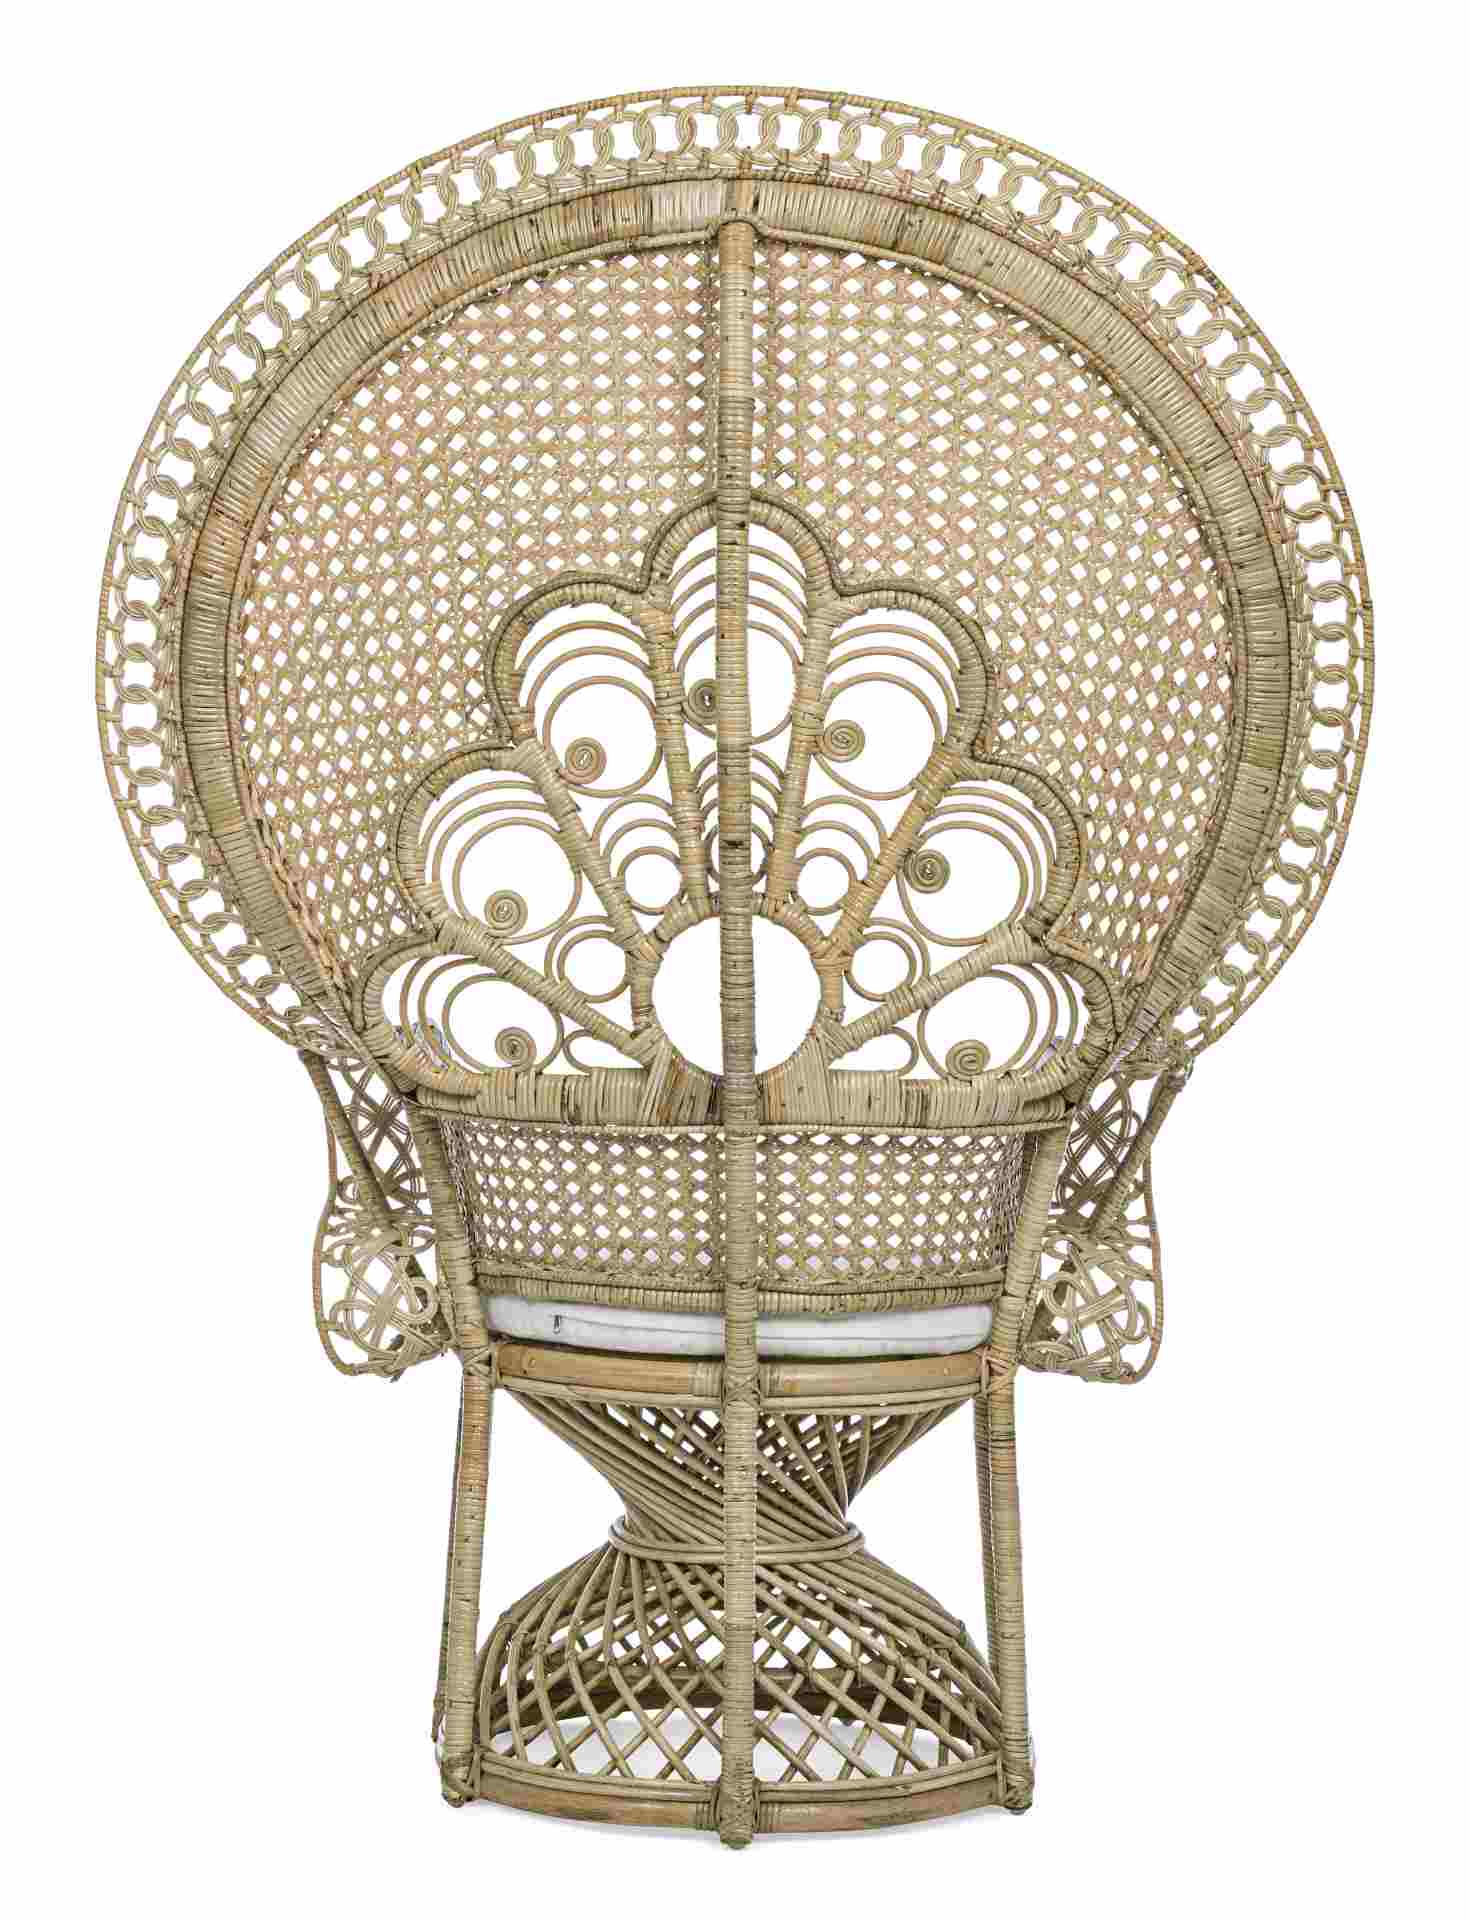 Der Sessel Peacock überzeugt mit seinem klassischen Design. Gefertigt wurde er aus Rattan, welches einen natürlichen Farbton besitzt. Das Gestell ist auch aus Rattan. Der Sessel besitzt eine Sitzhöhe von 47 cm. Die Breite beträgt 106 cm.